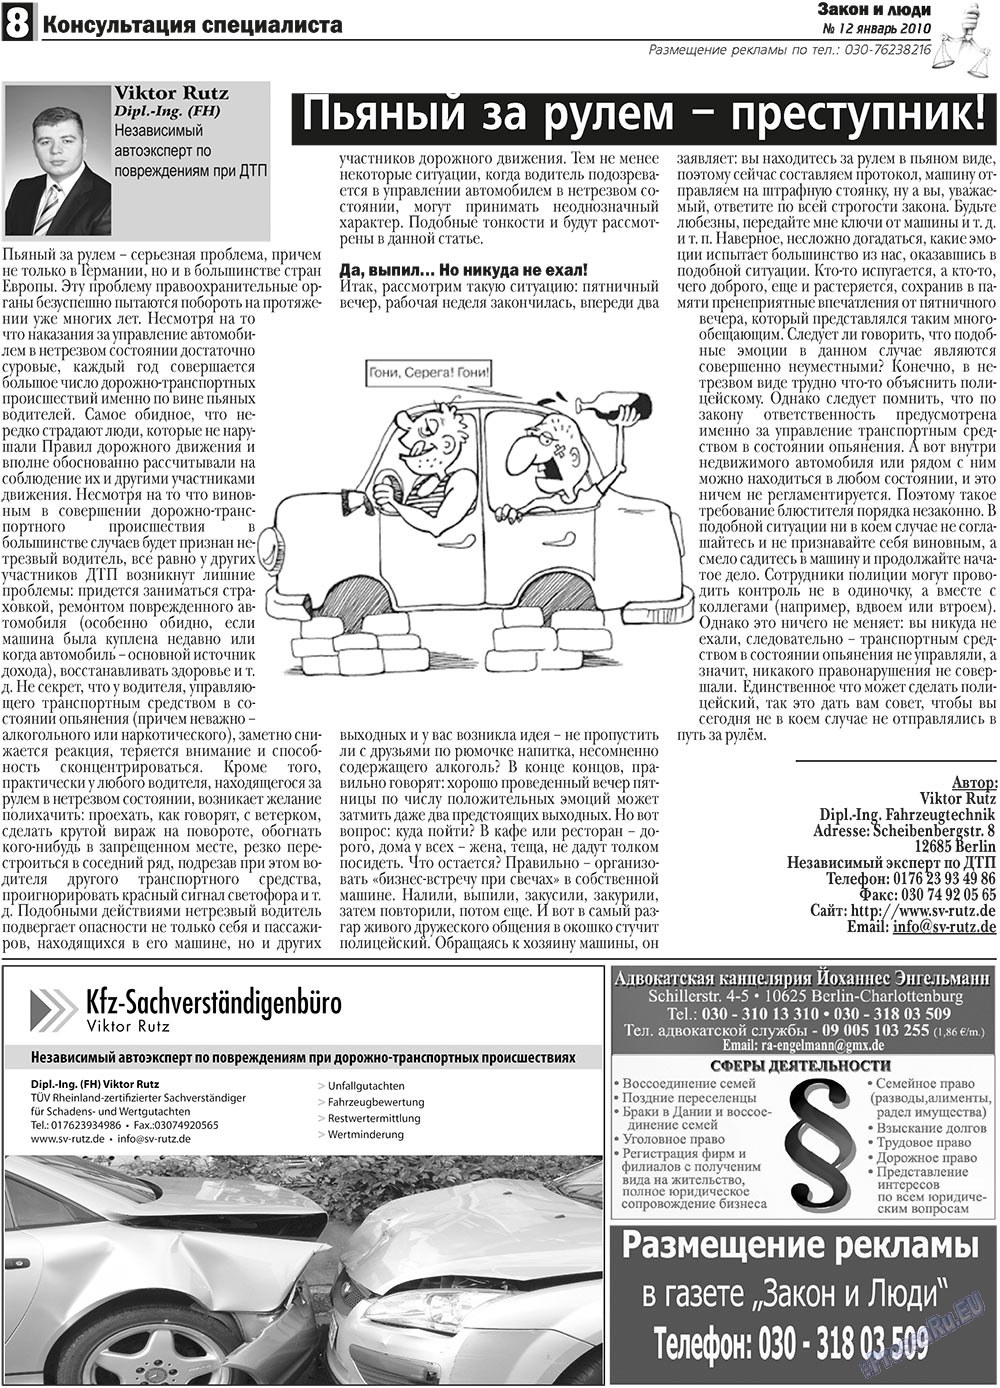 Закон и люди (газета). 2011 год, номер 1, стр. 8